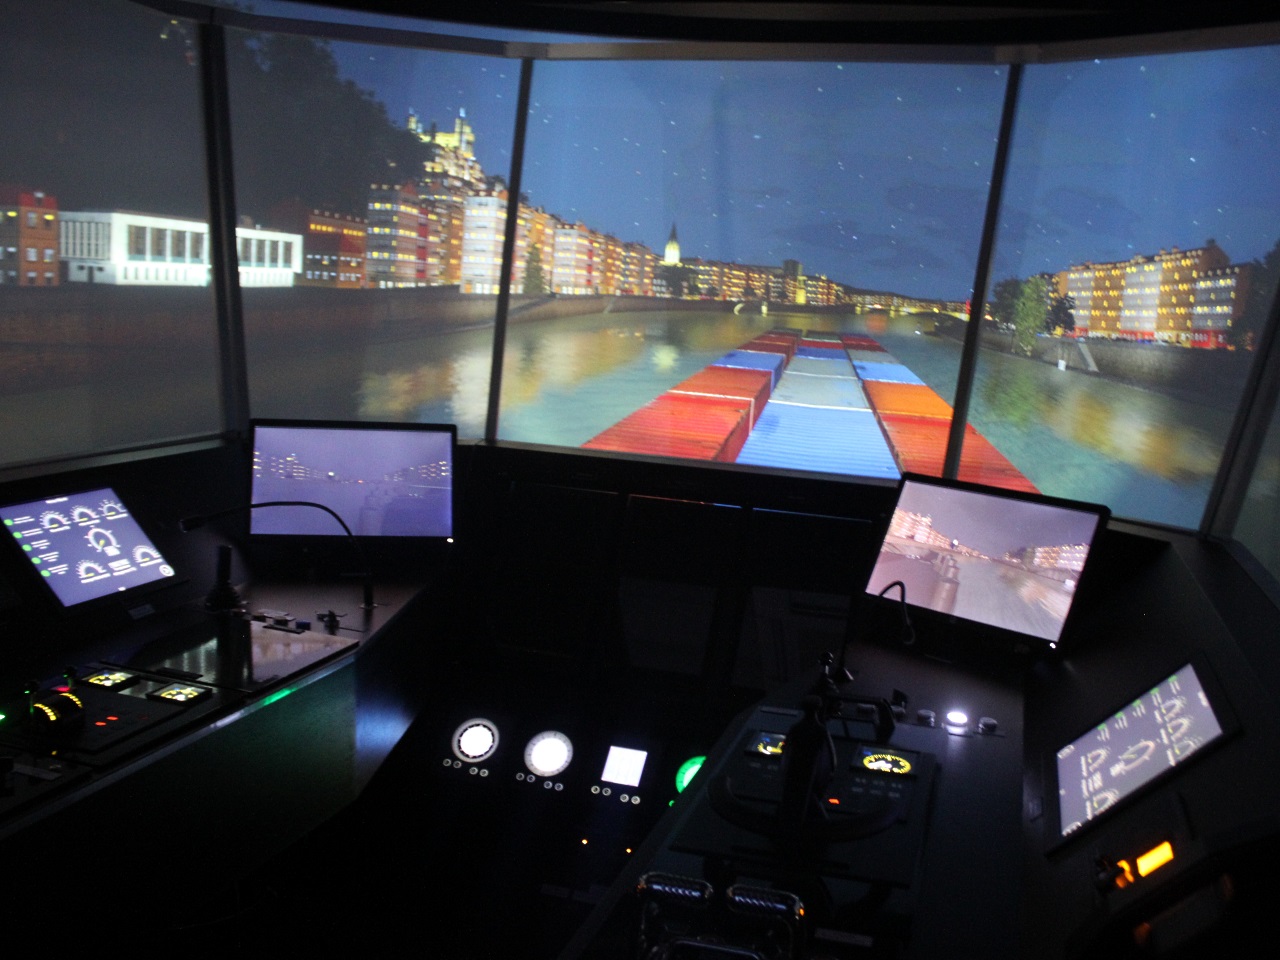 Le simulateur comprend une vision à 240° - LyonMag